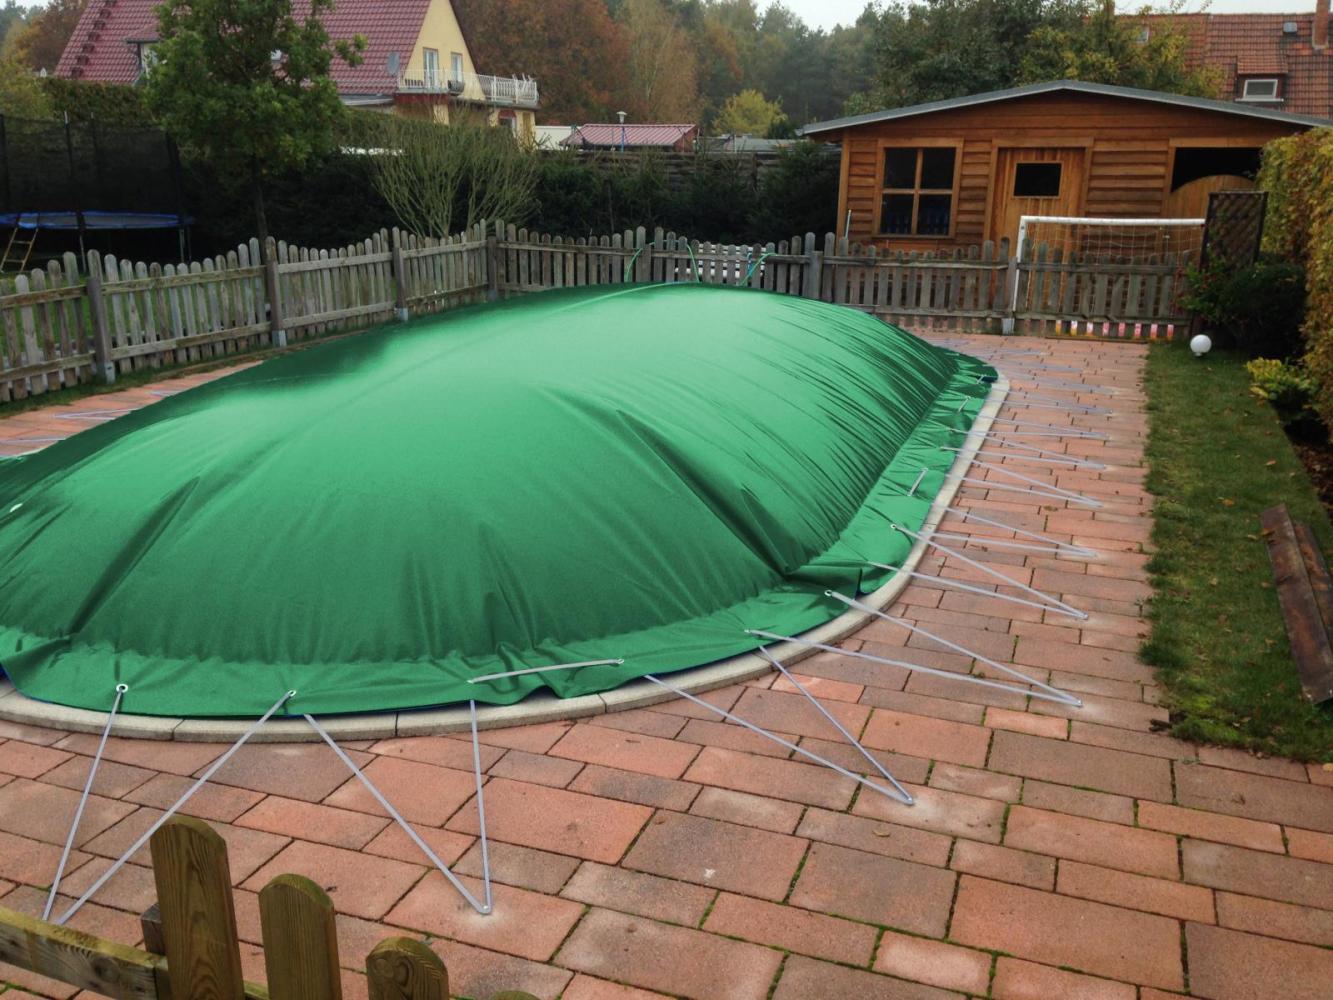 aufblasbare Winterplane für ovale Pools 7,00 x 3,50 cm Grün Bild 1